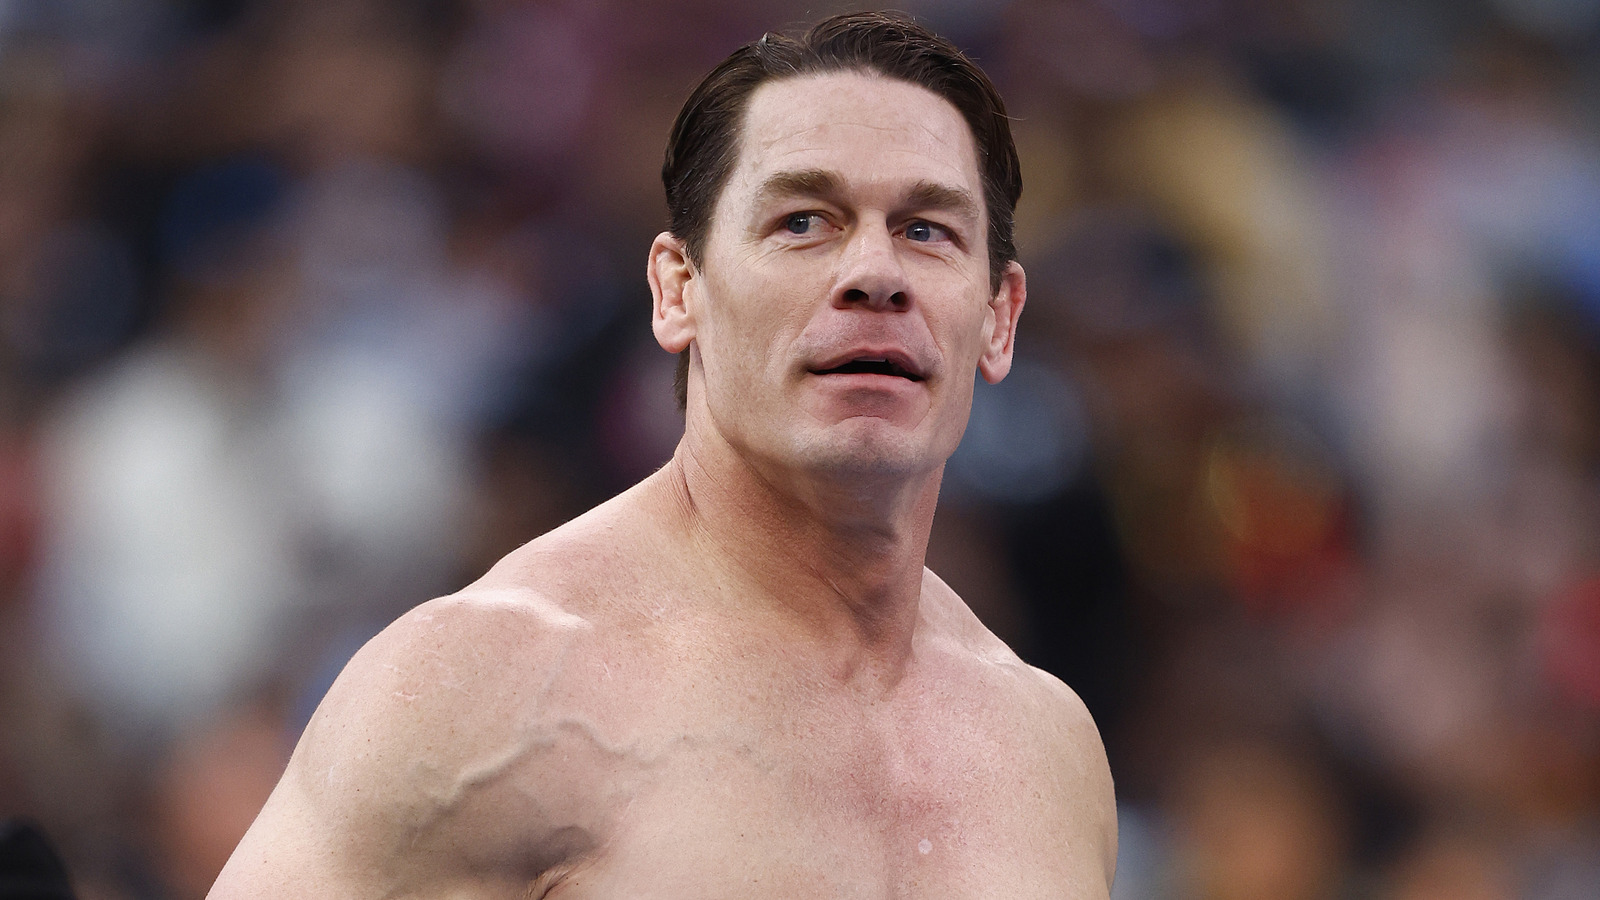 John Cena de la WWE habla sobre un posible retiro y planes futuros de lucha libre con Logan Paul